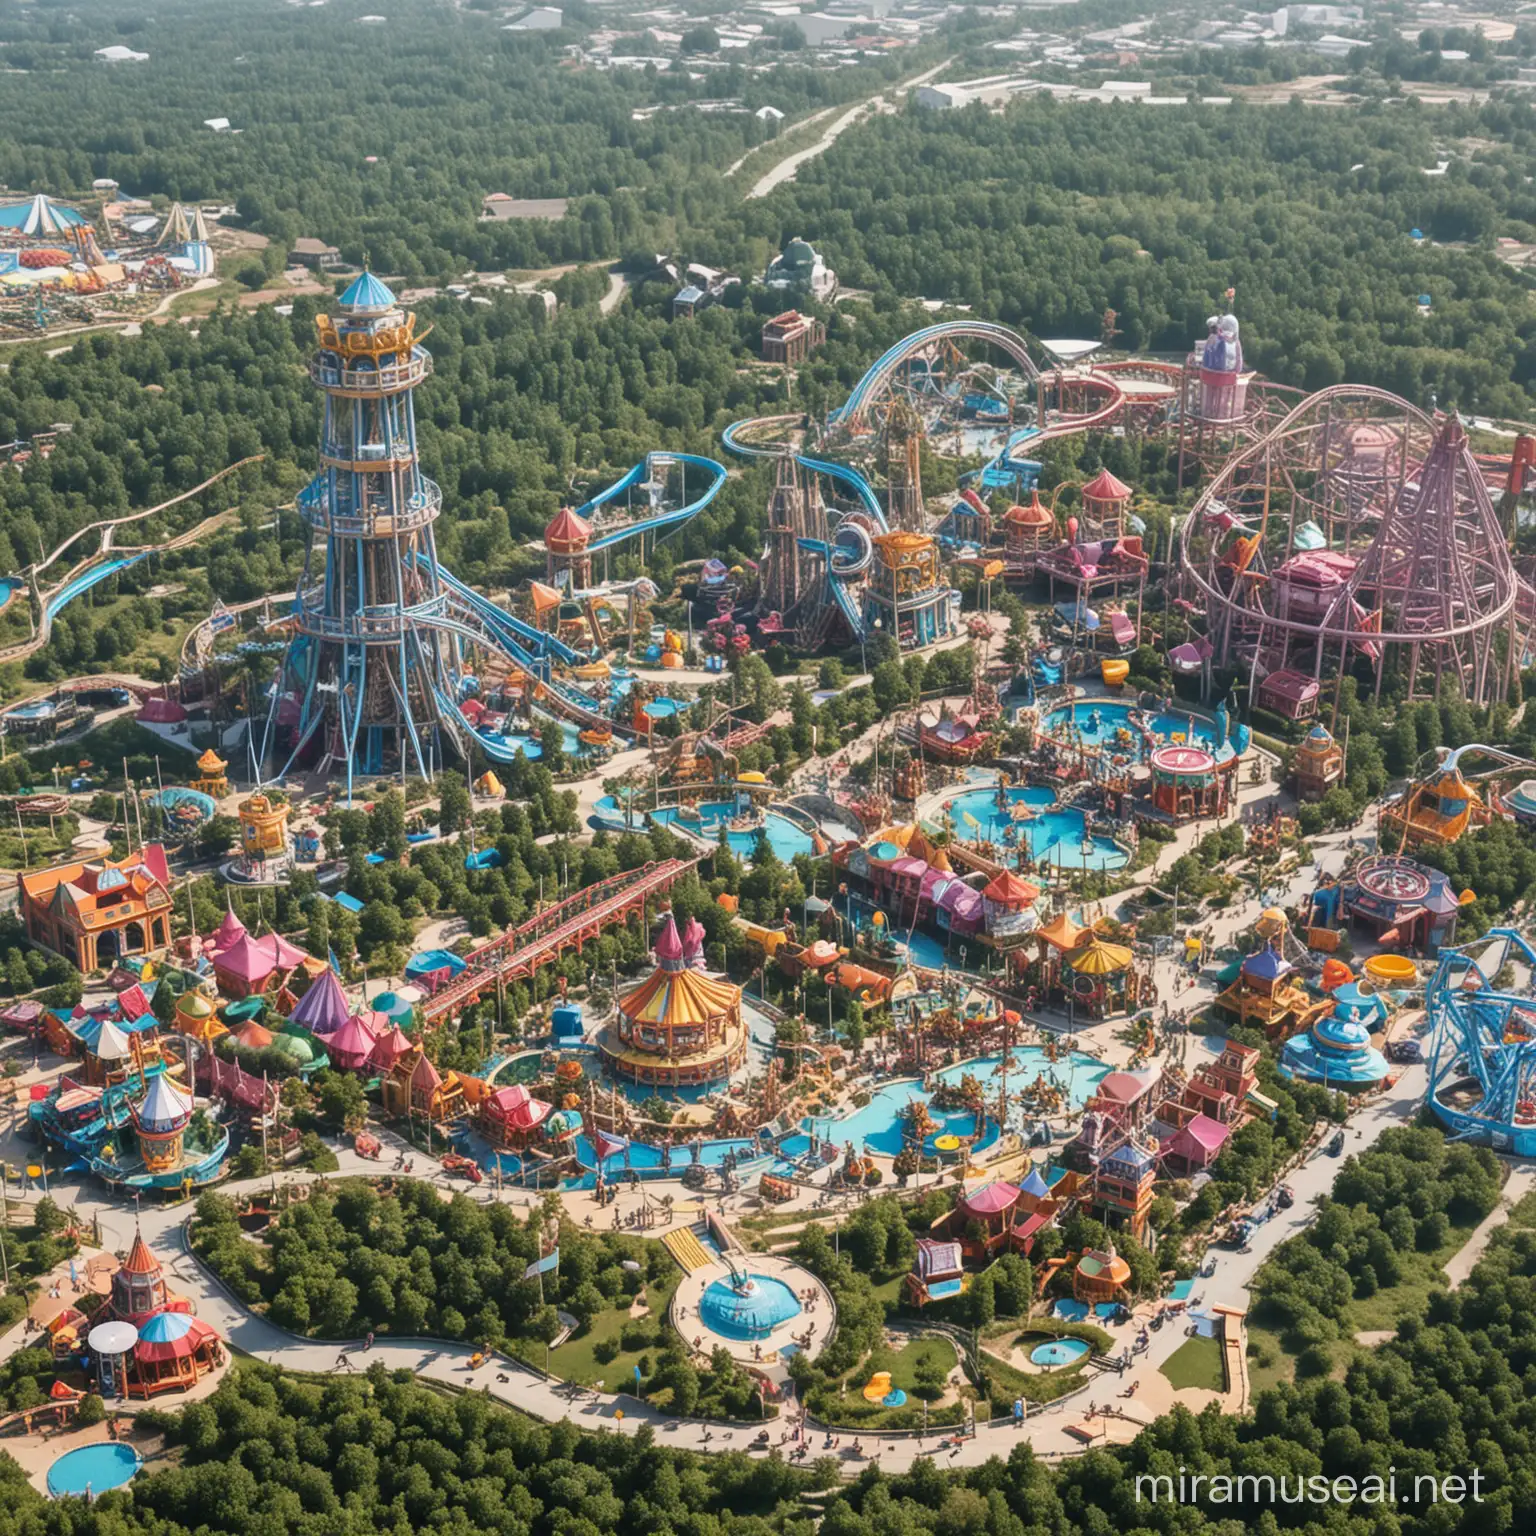 AriLand Theme Park Magical Adventures and Joyful Rides